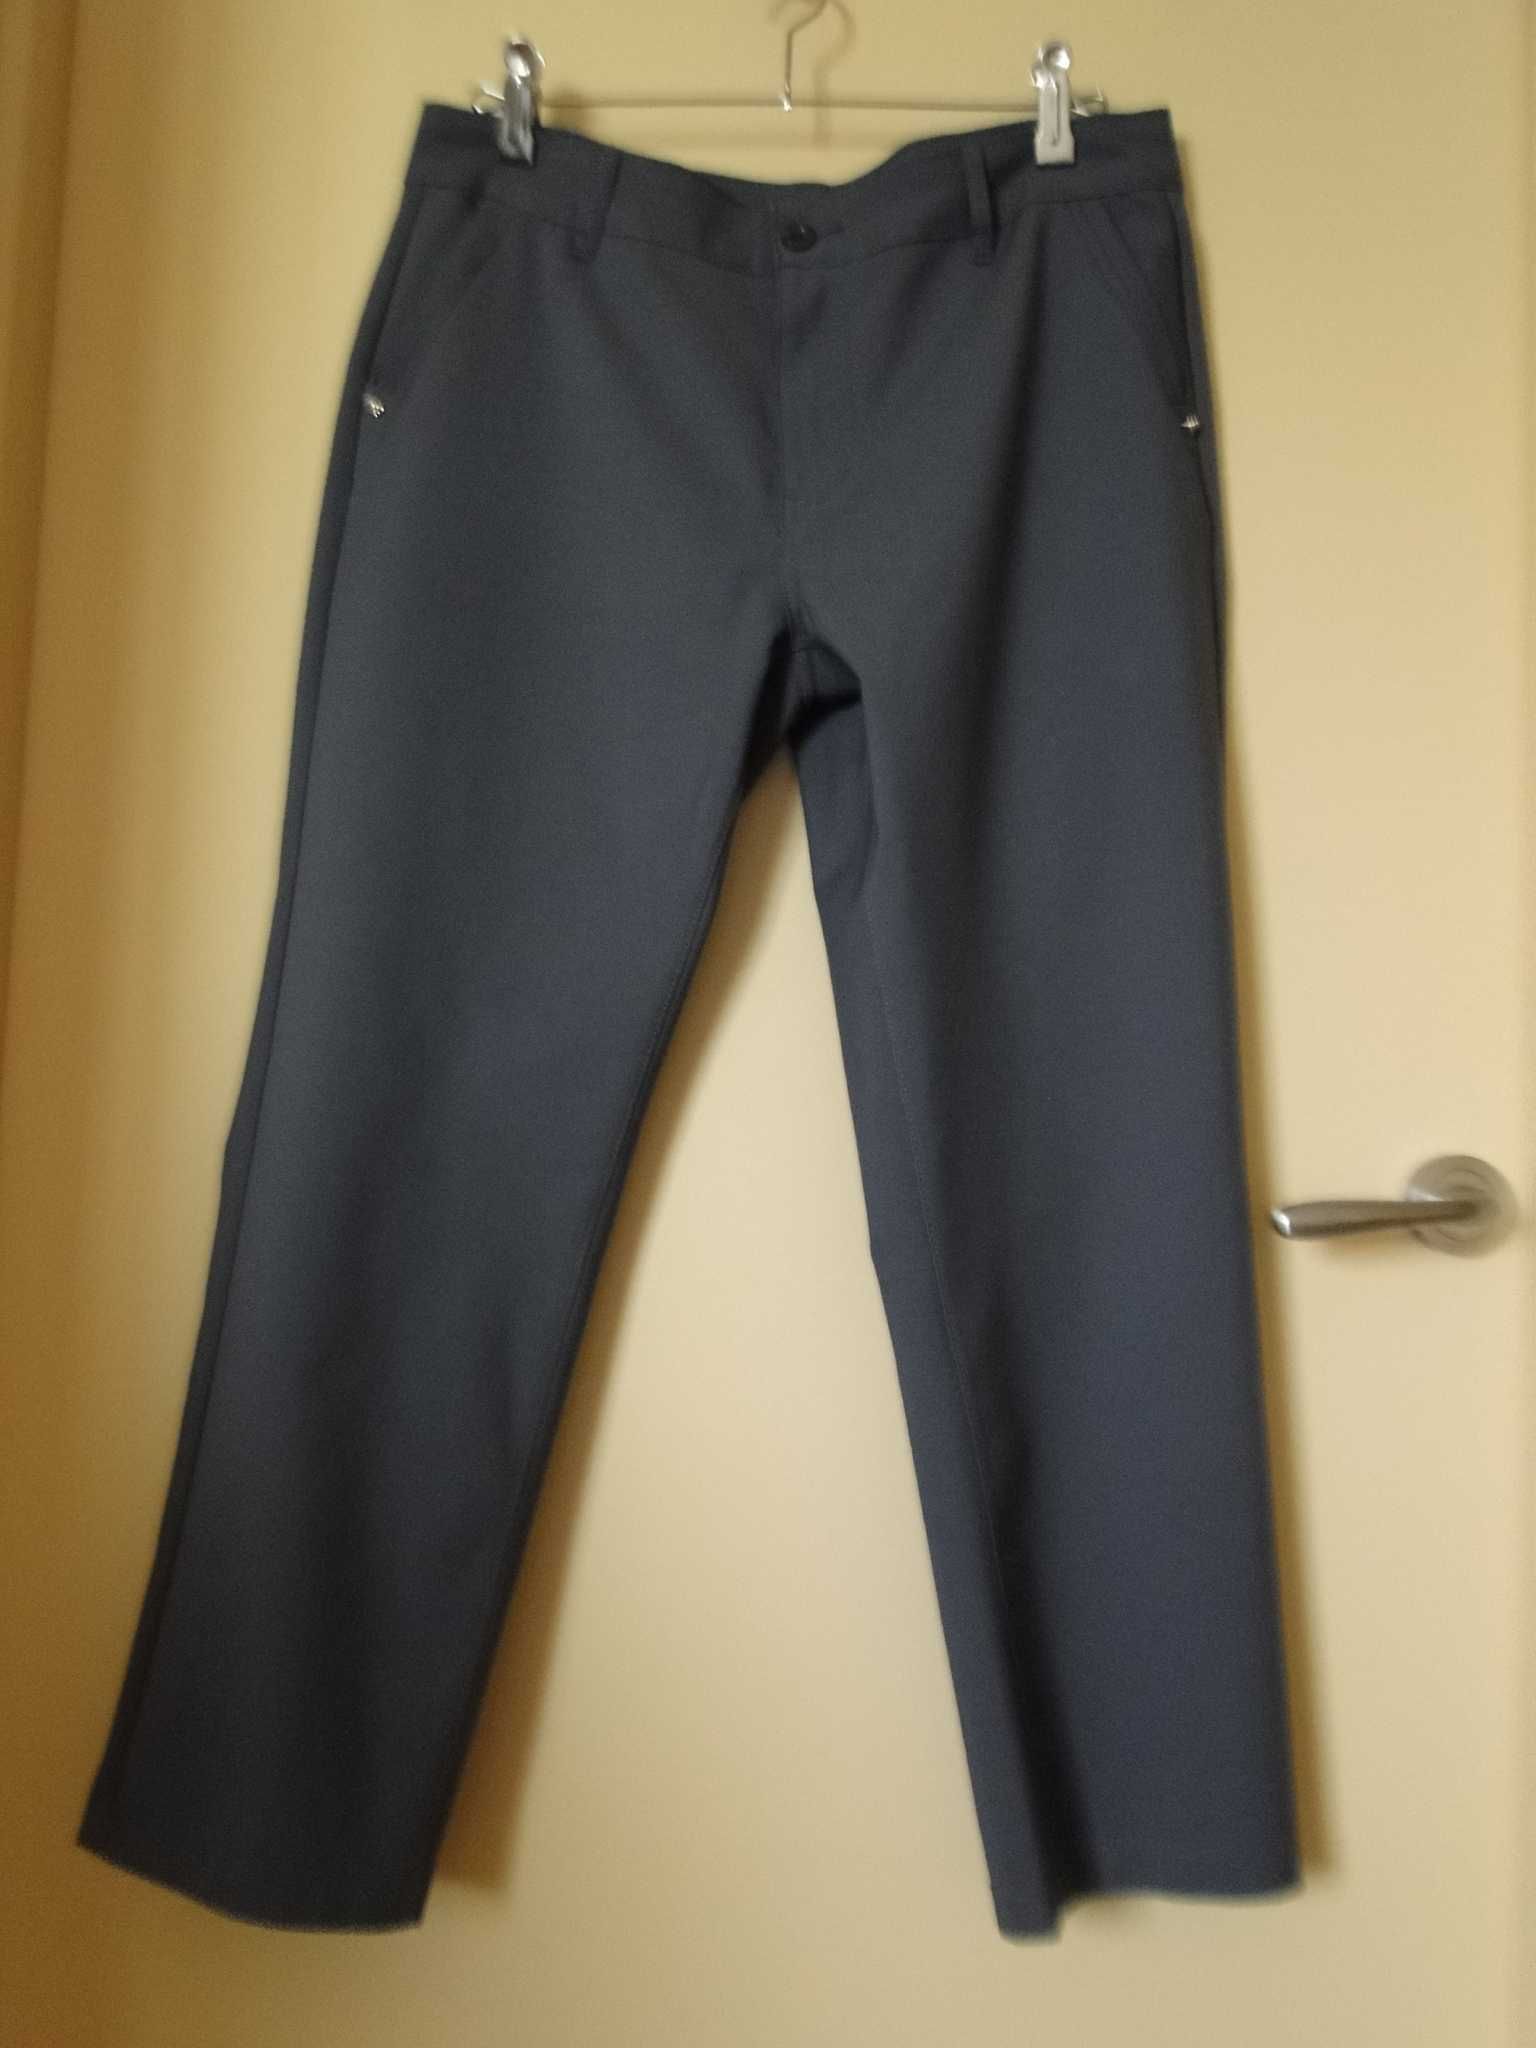 NOWE eleganckie spodnie R.42 stalowe